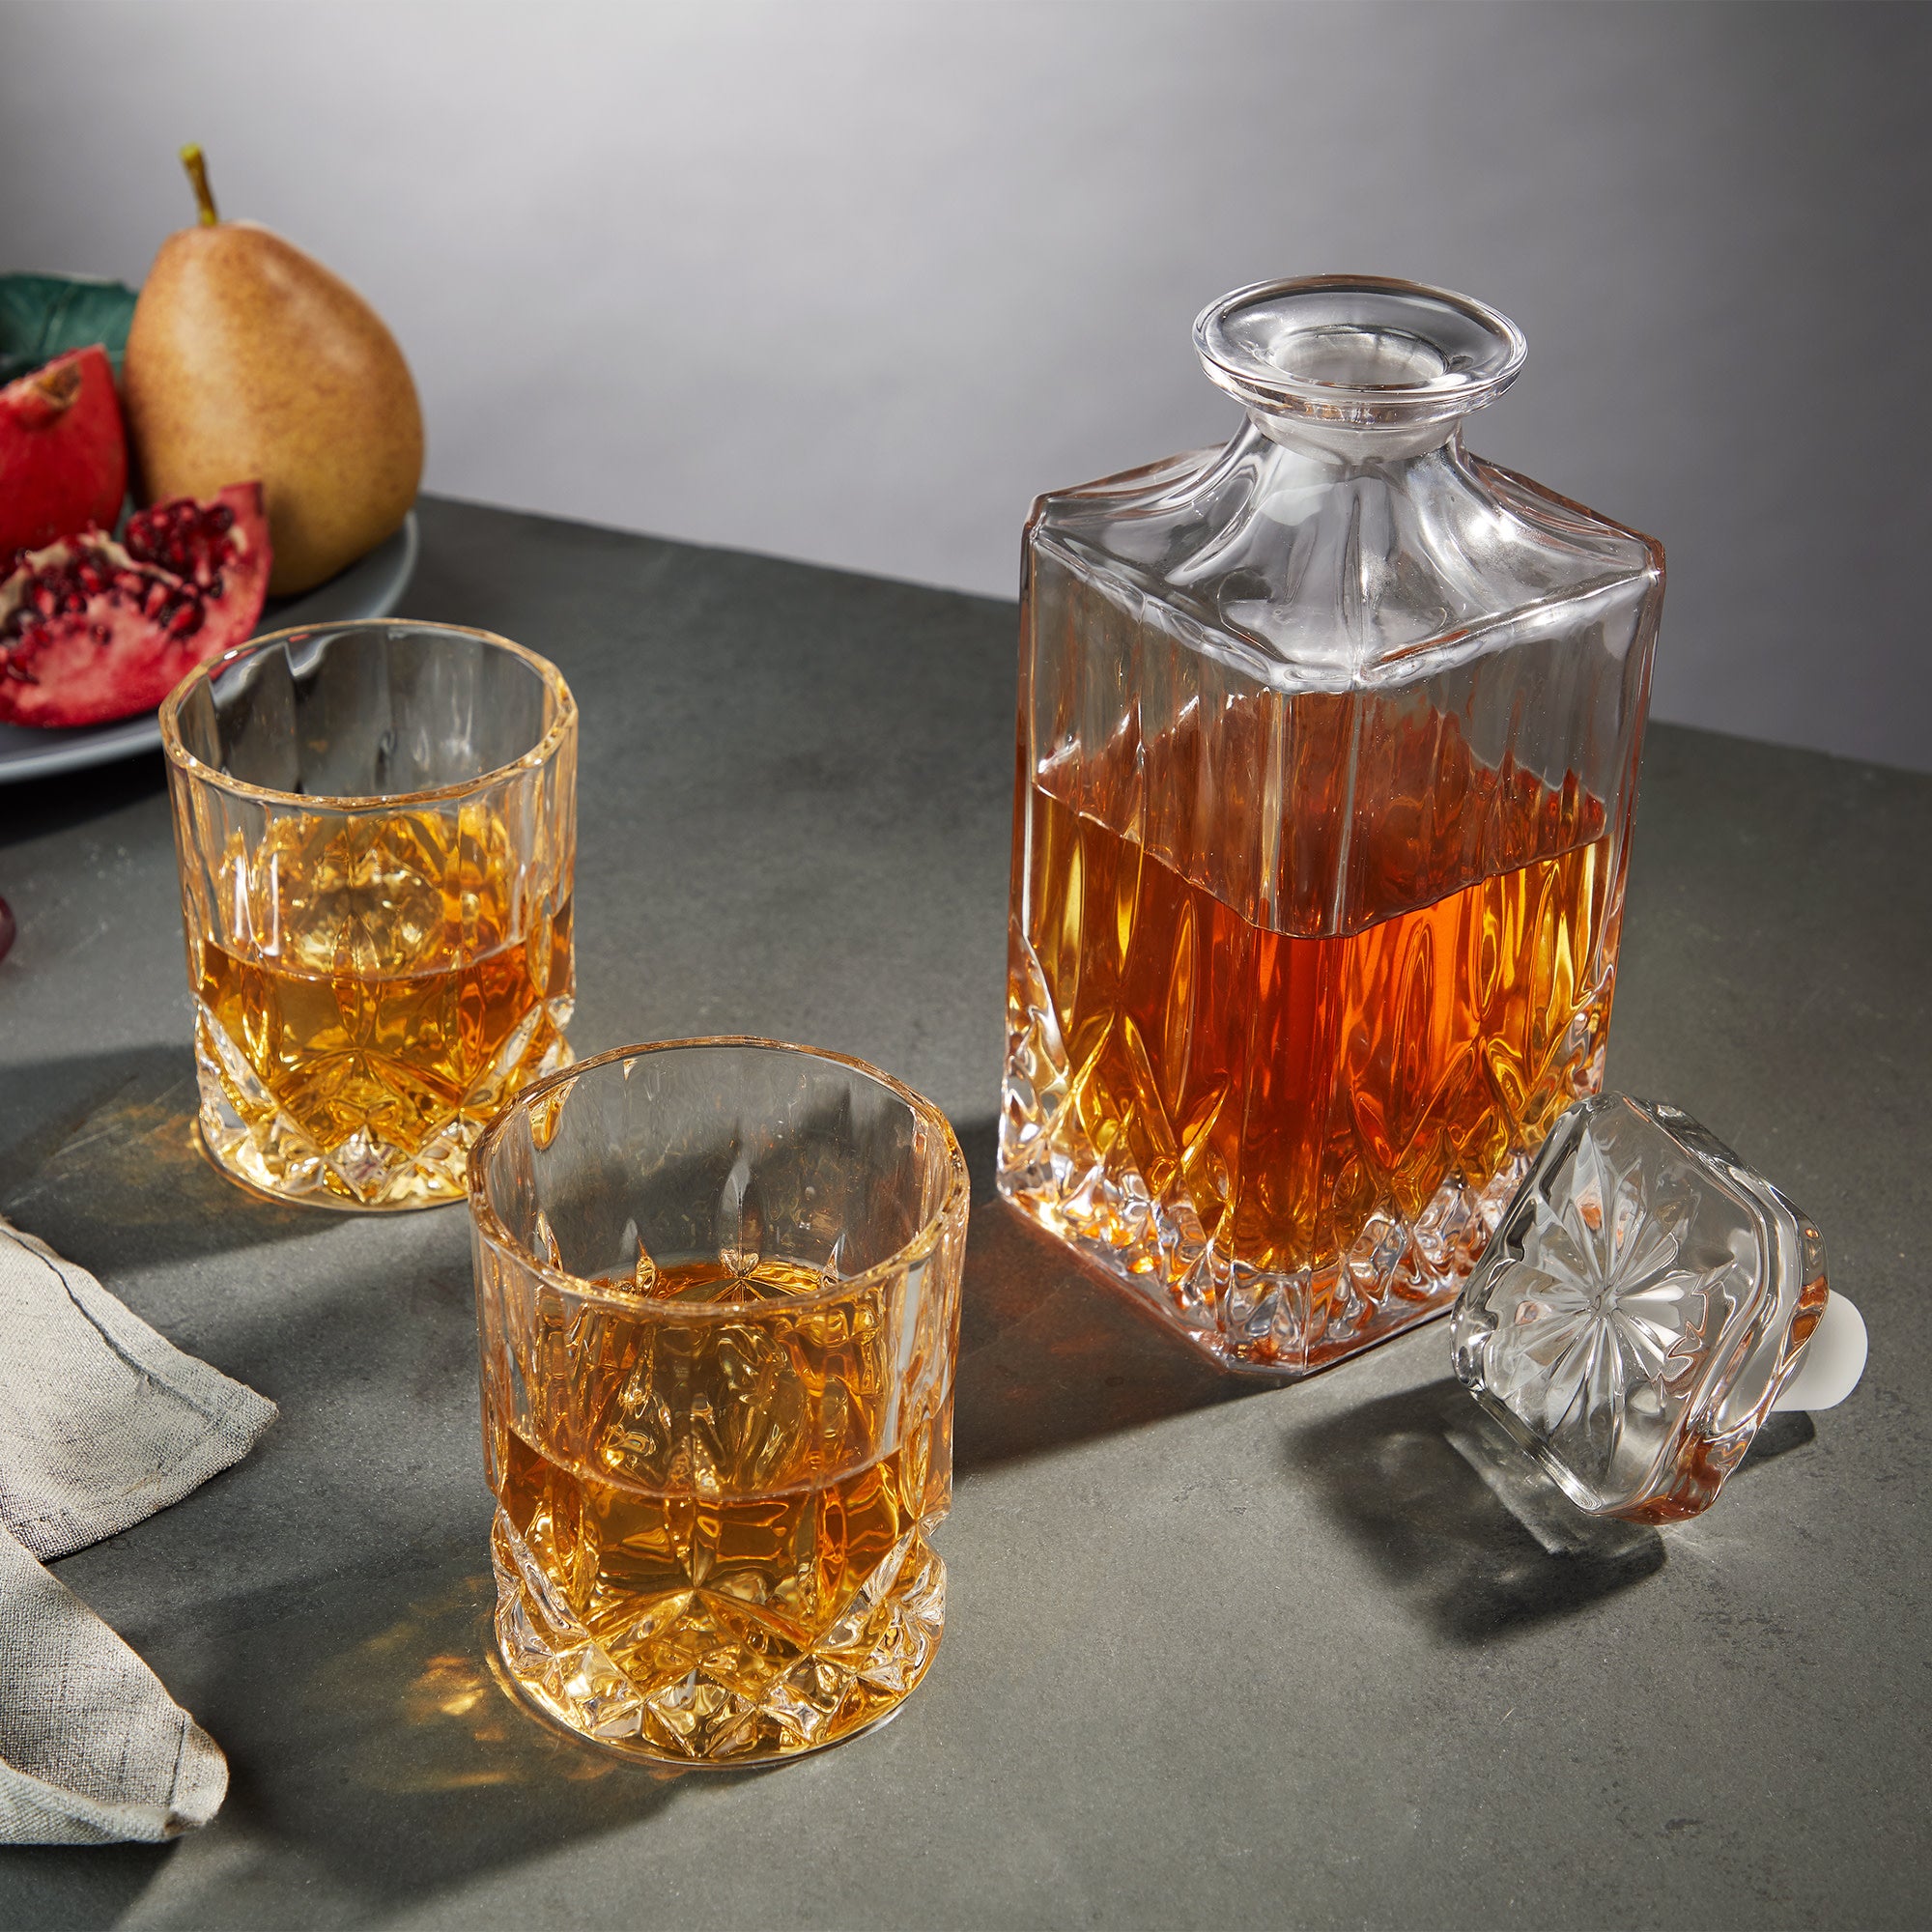 Bicchiere da whisky personalizzato XL - tumbler WINE ATTACH - Grandi  Bottiglie